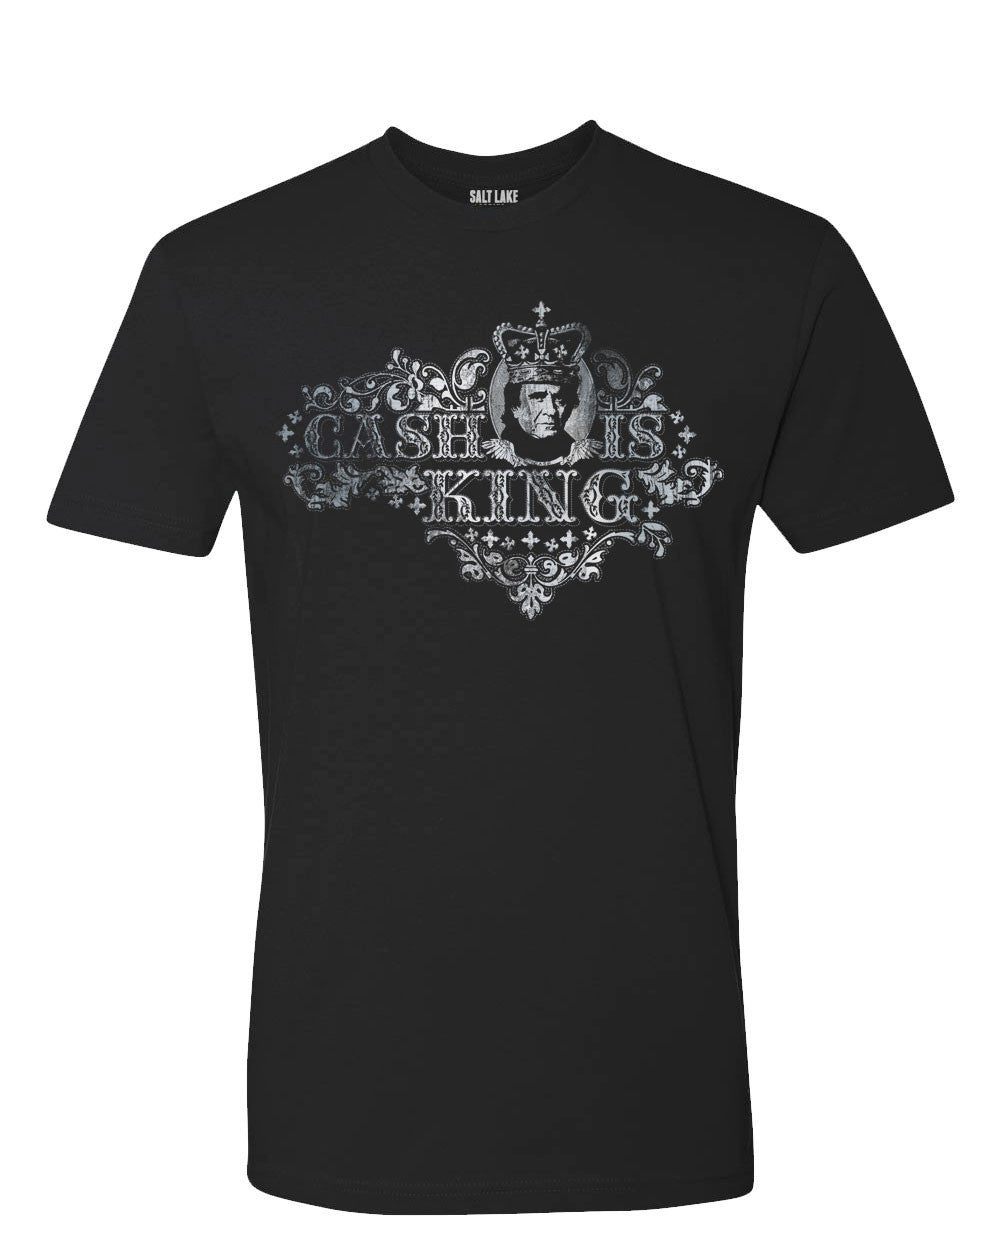 Cash Is King T-shirt – Salt Lake Clothing